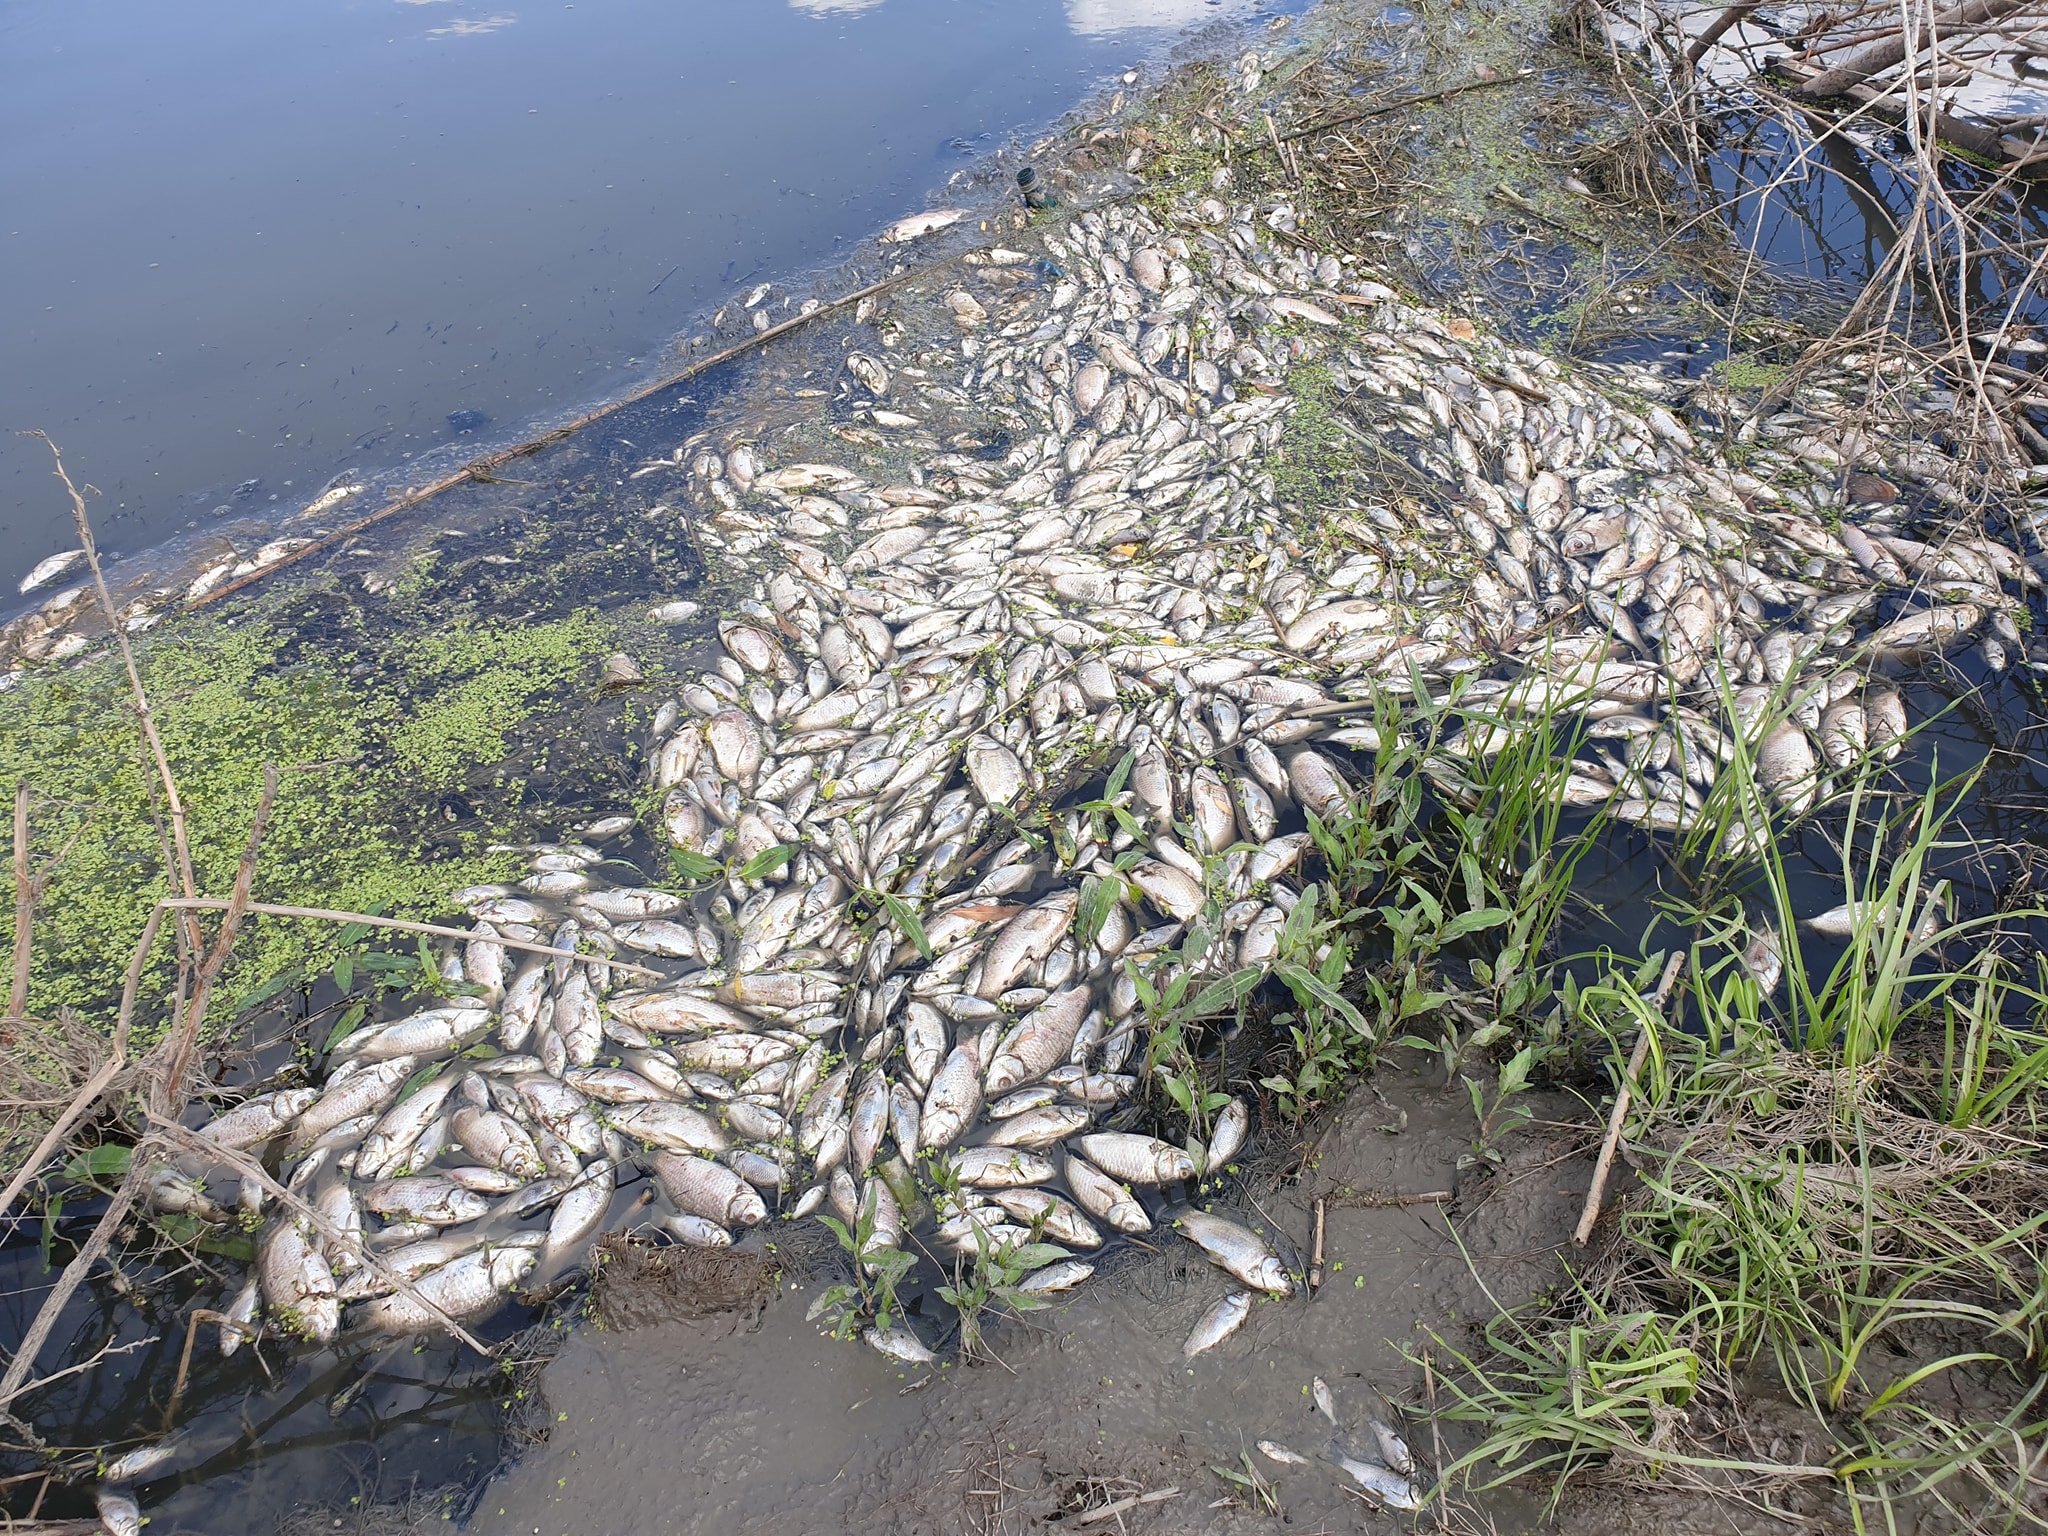  IMAGINI: Mii de pești morți în Bahlui. Apa e neagră. Dezastru ecologic!